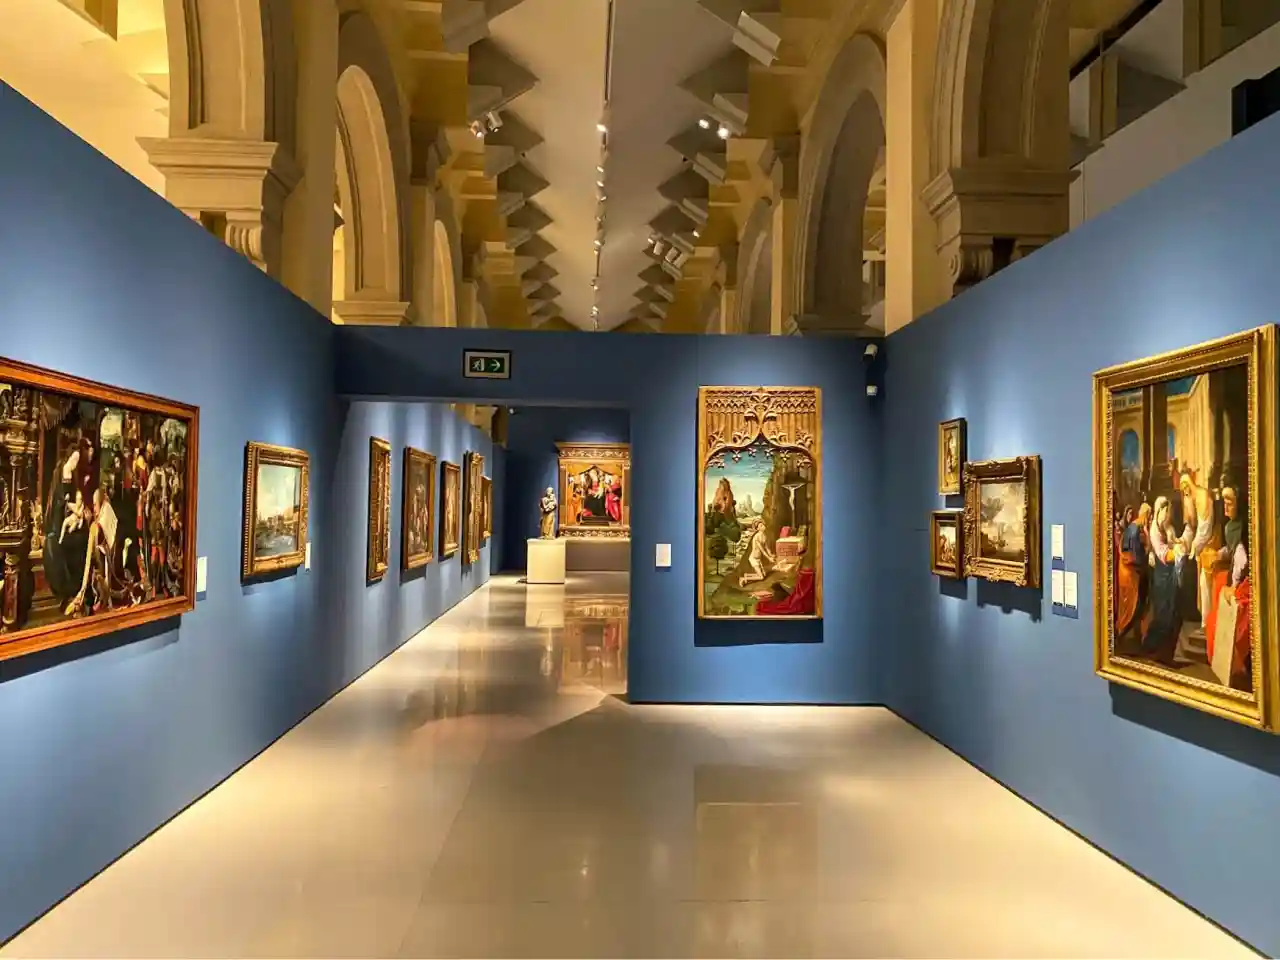 Renaissance art collection at Museu Nacional d'Art de Catalunya